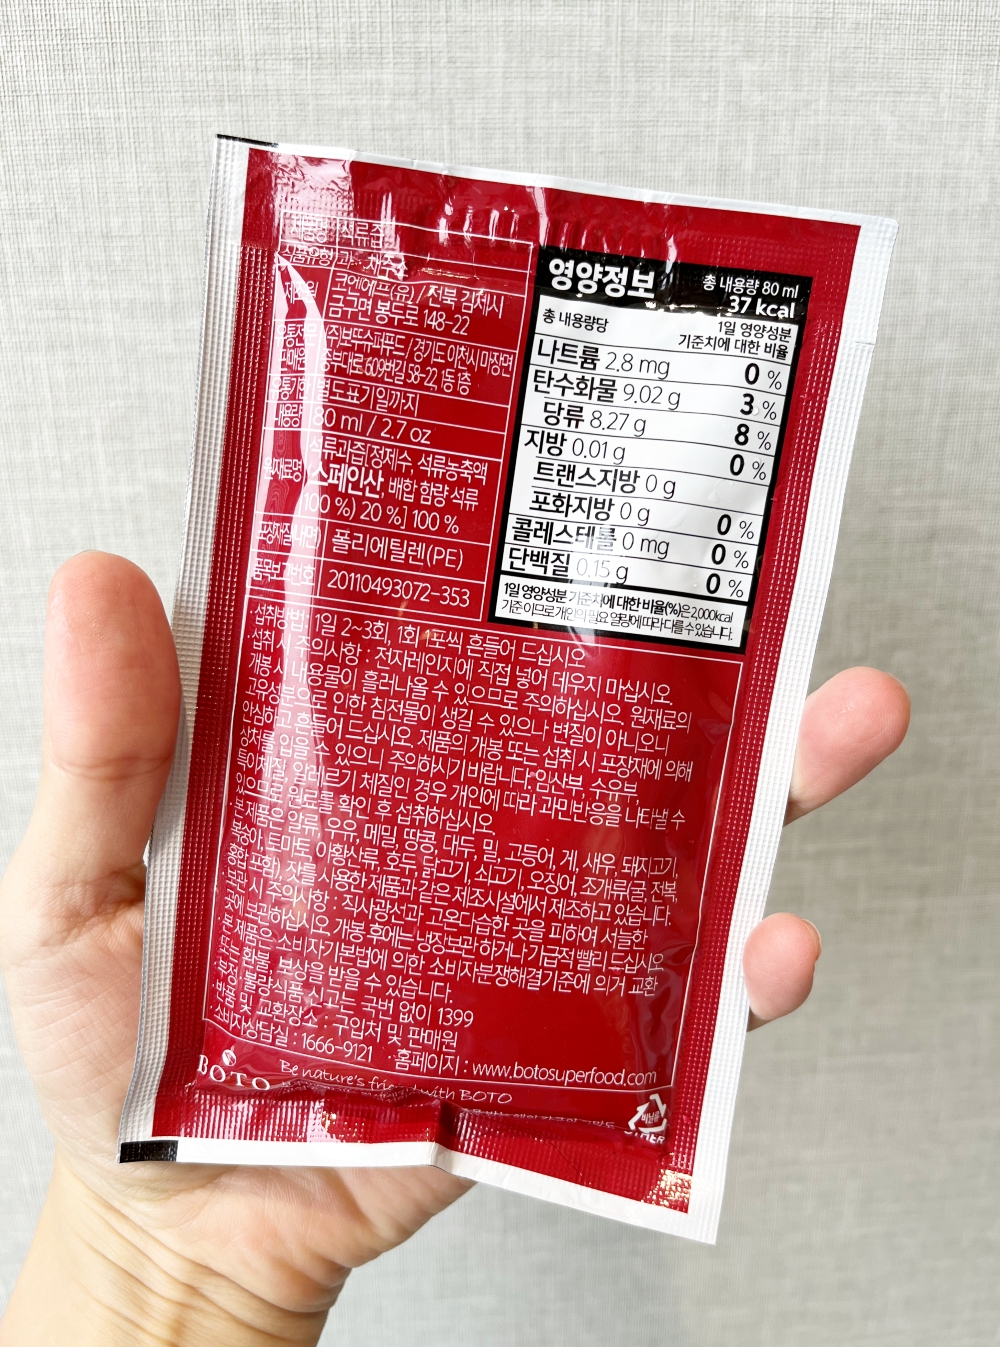 韓國BOTO紅石榴汁成份表